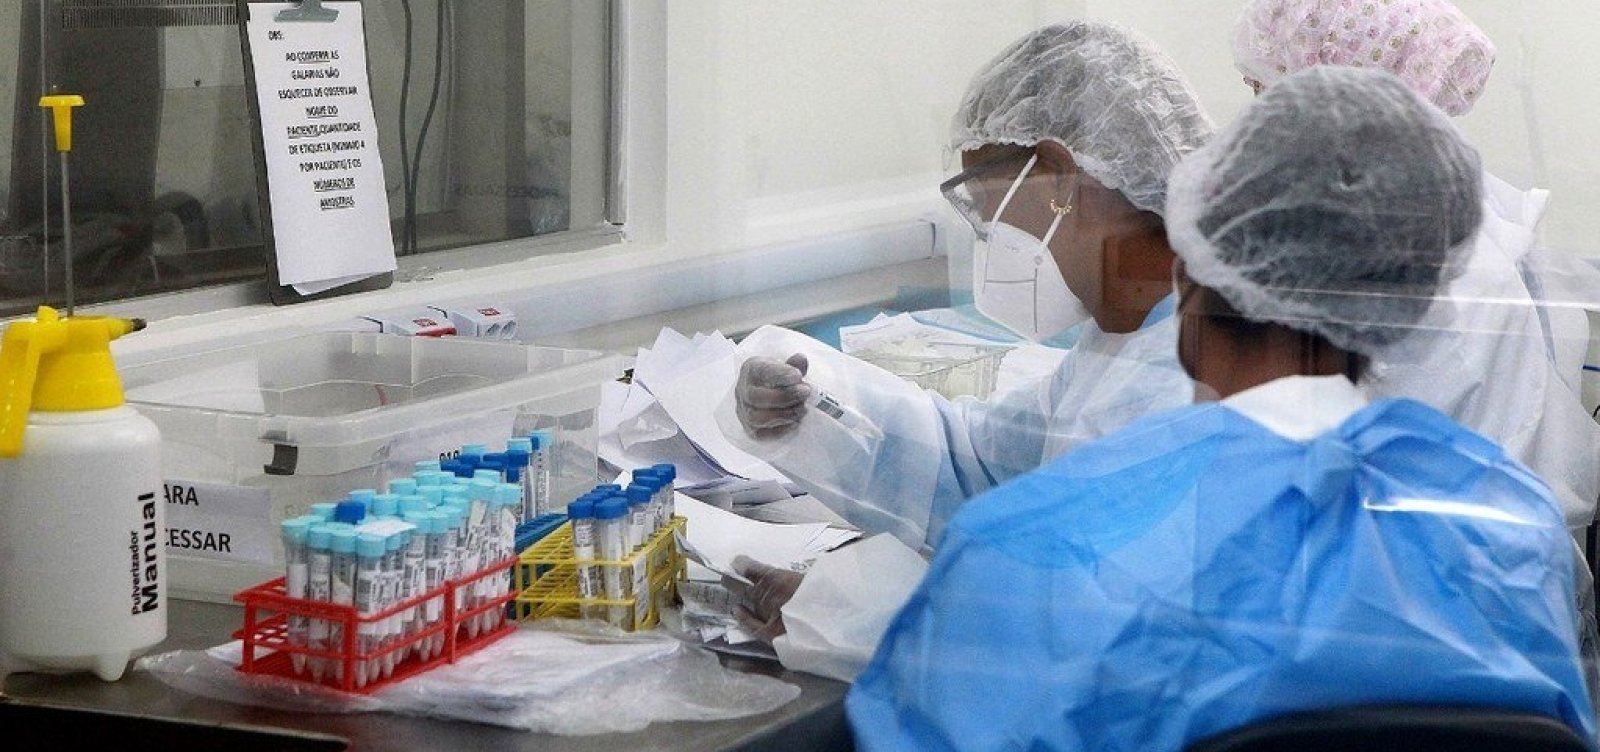 Com aumento de casos, Salvador entra em ‘descontrole epidemiológico' para Covid-19 